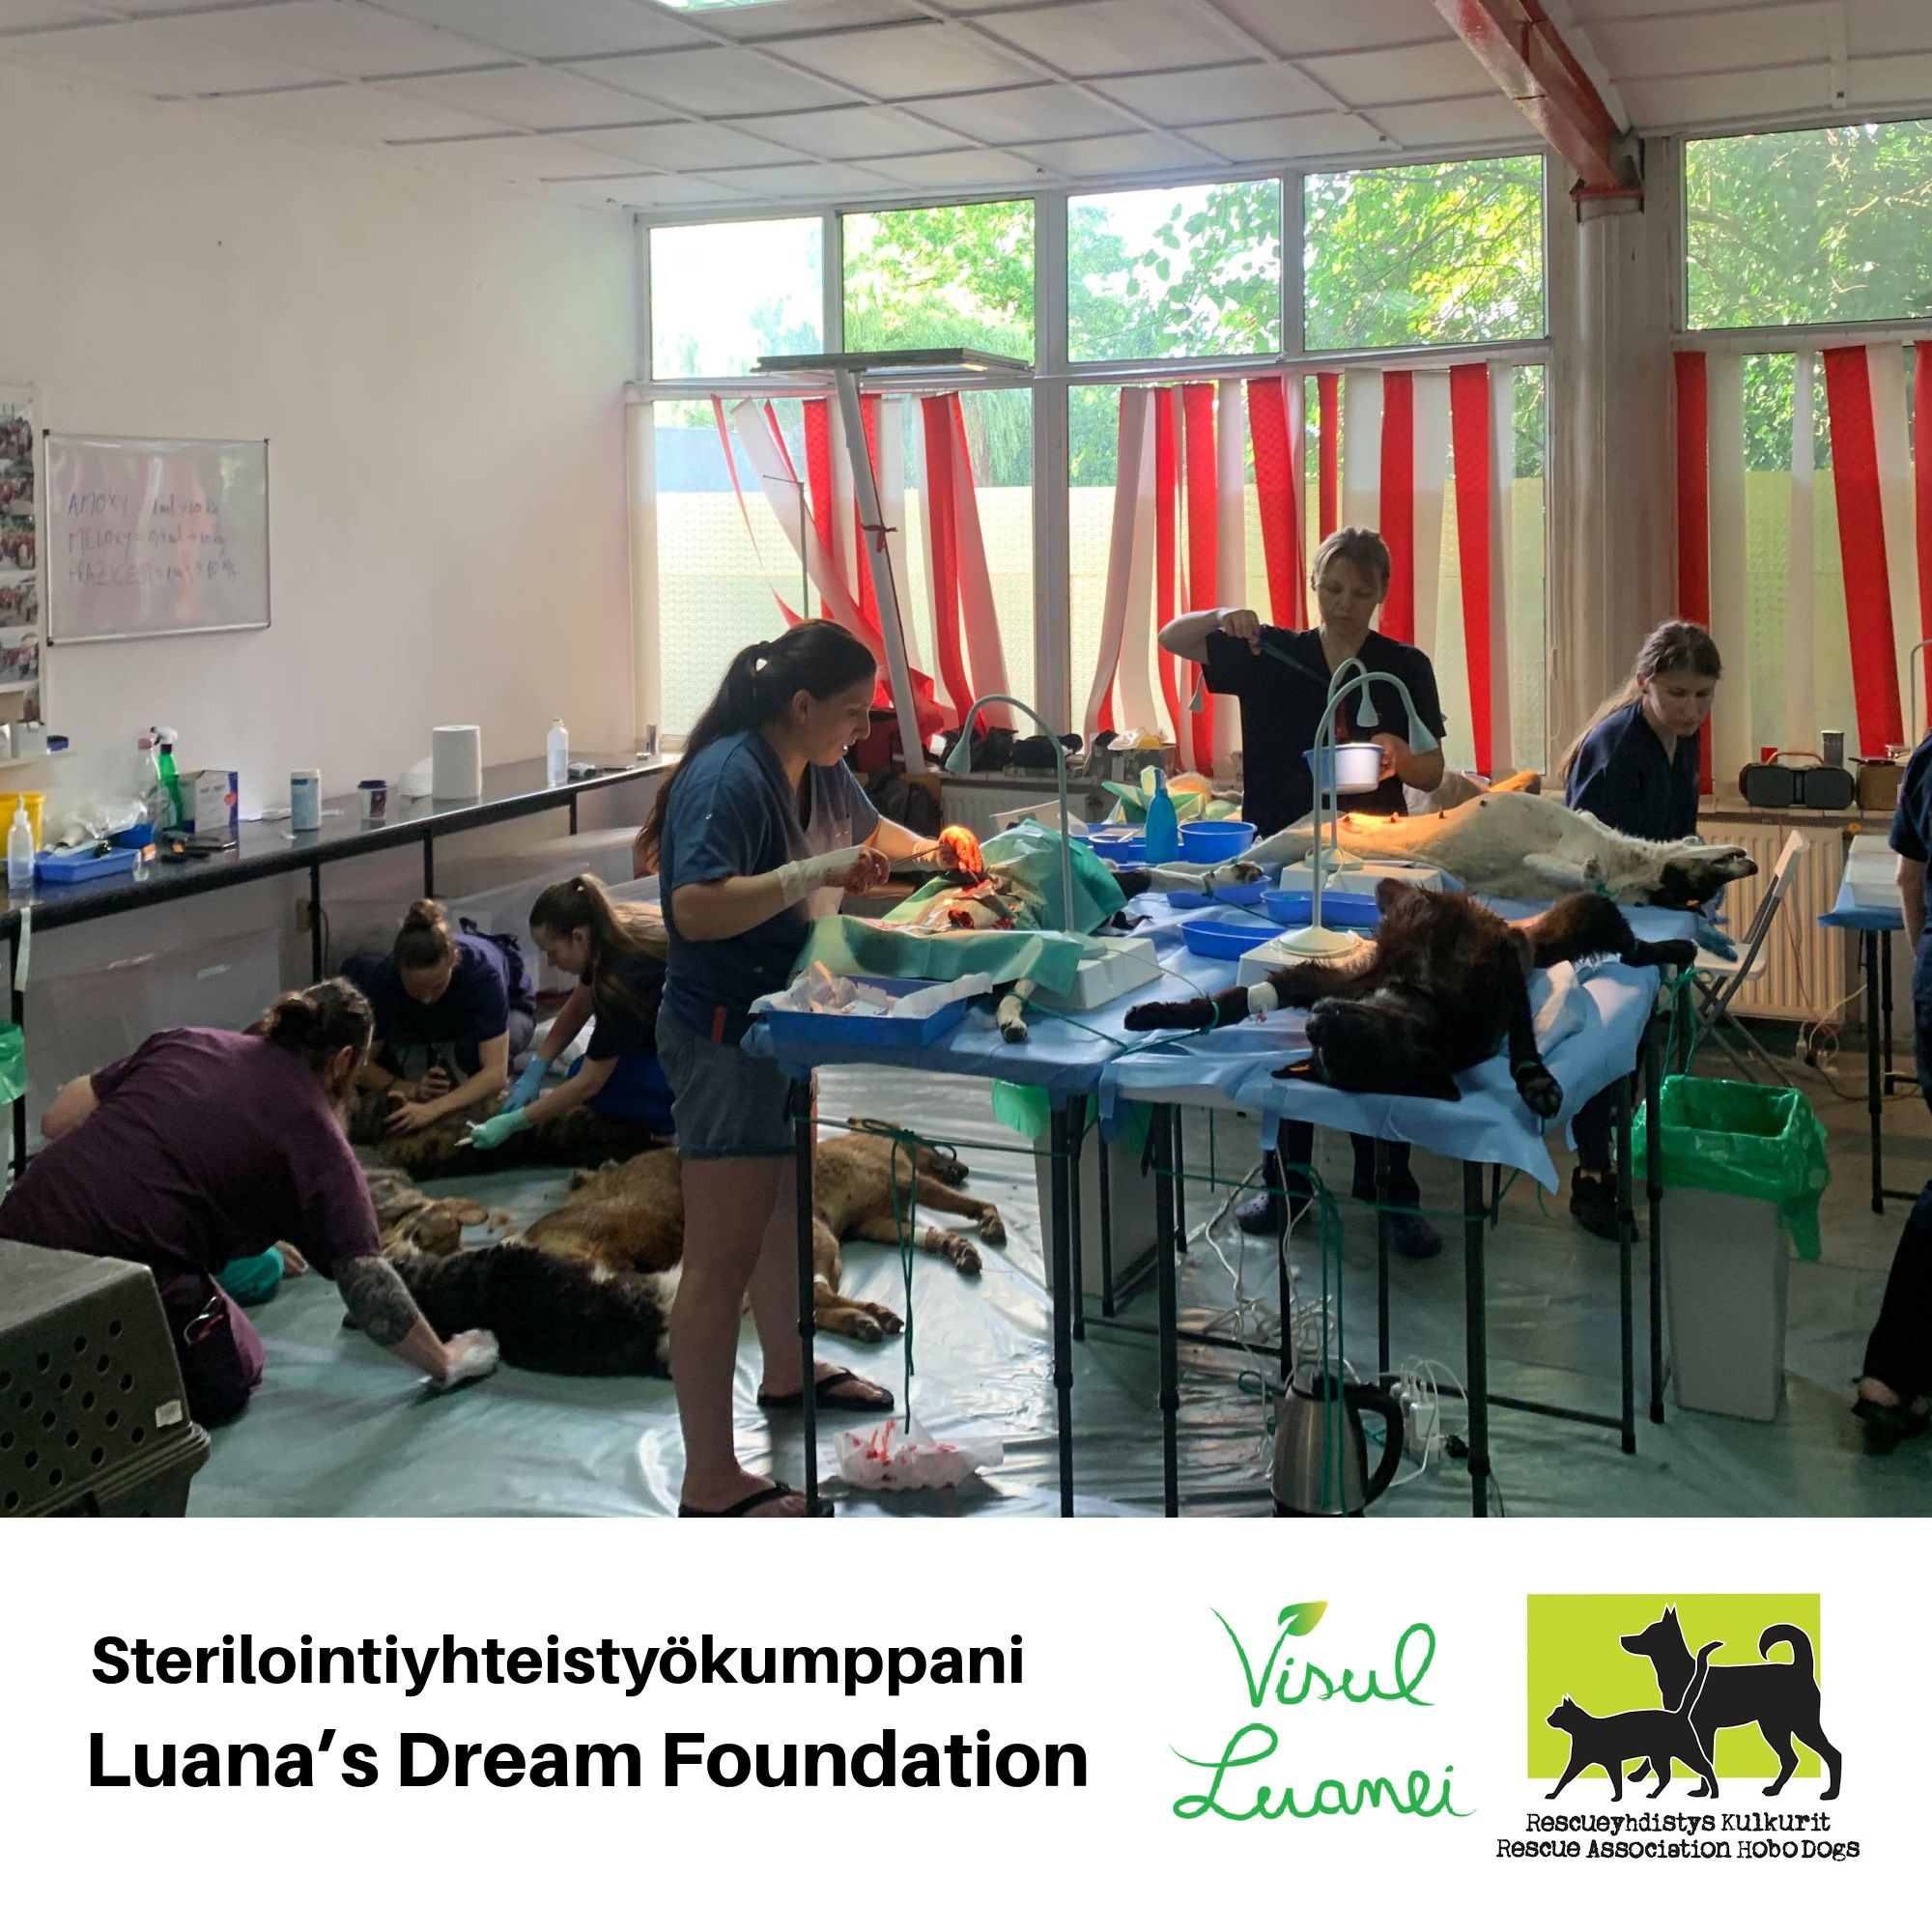 Esittelyssä Kulkurien sterilointiyhteistyökumppanit – Luana’s Dream Foundation